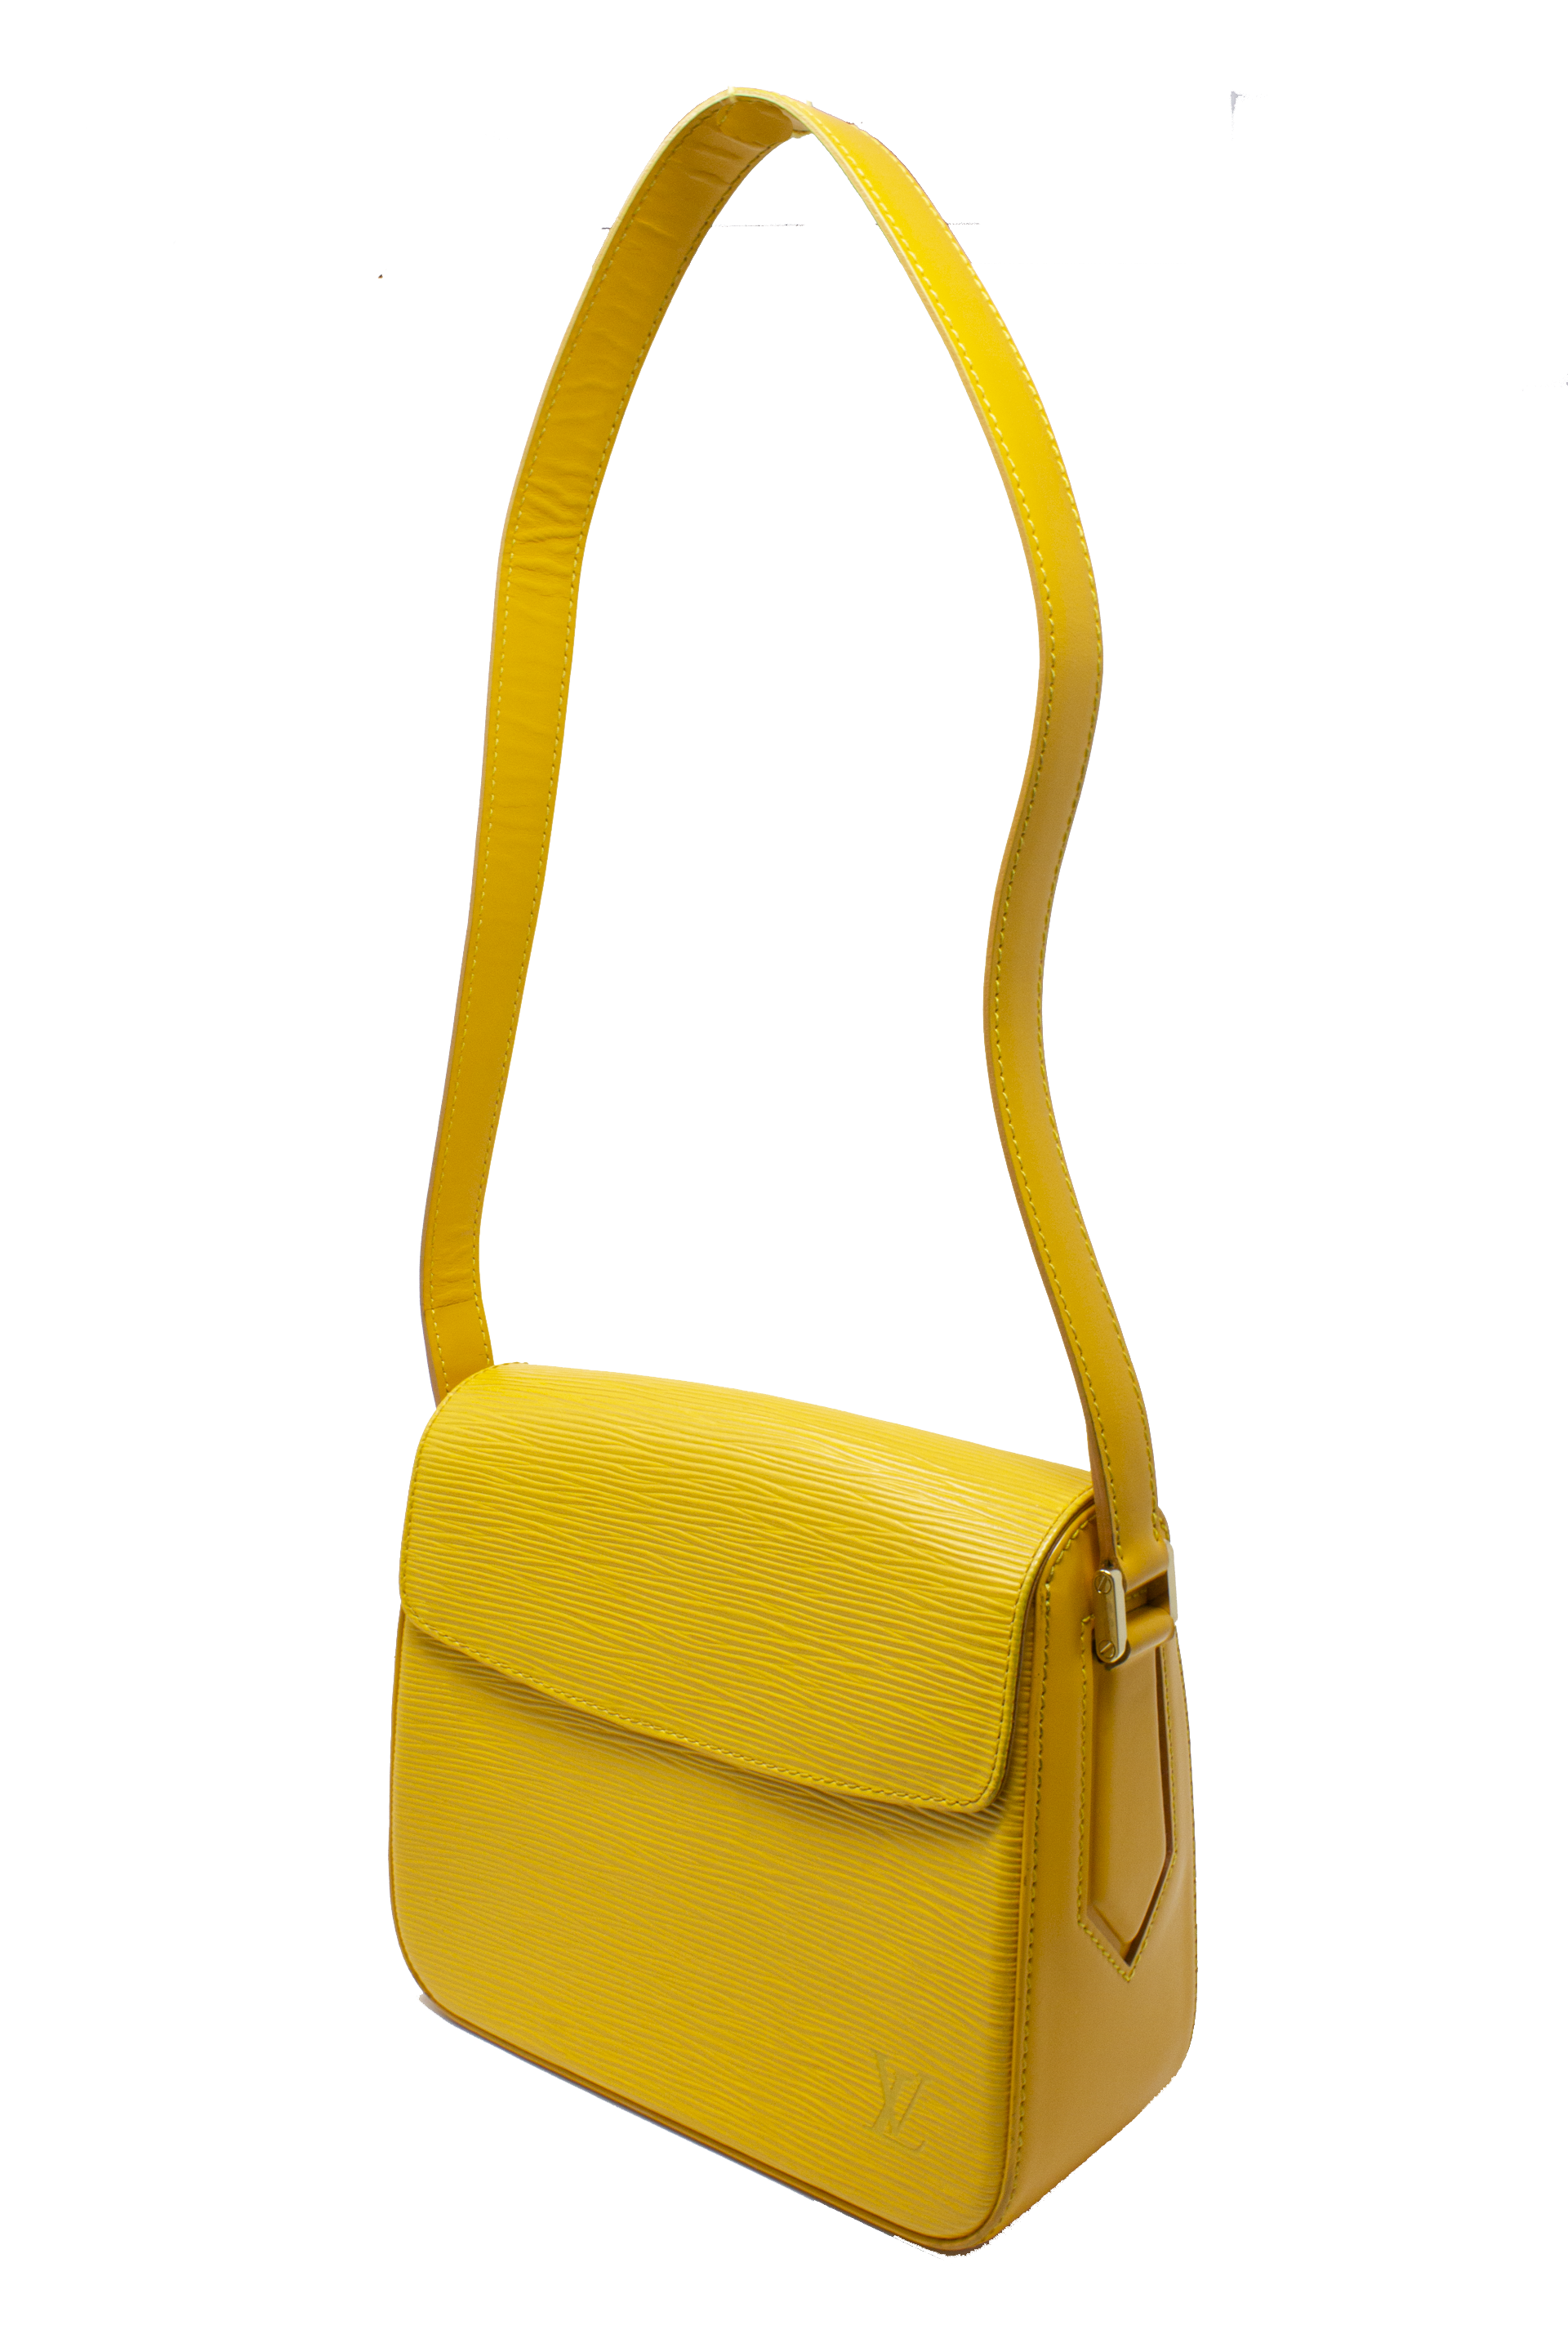 Louis Vuitton Epi Buci Bag - Yellow Shoulder Bags, Handbags - LOU75539